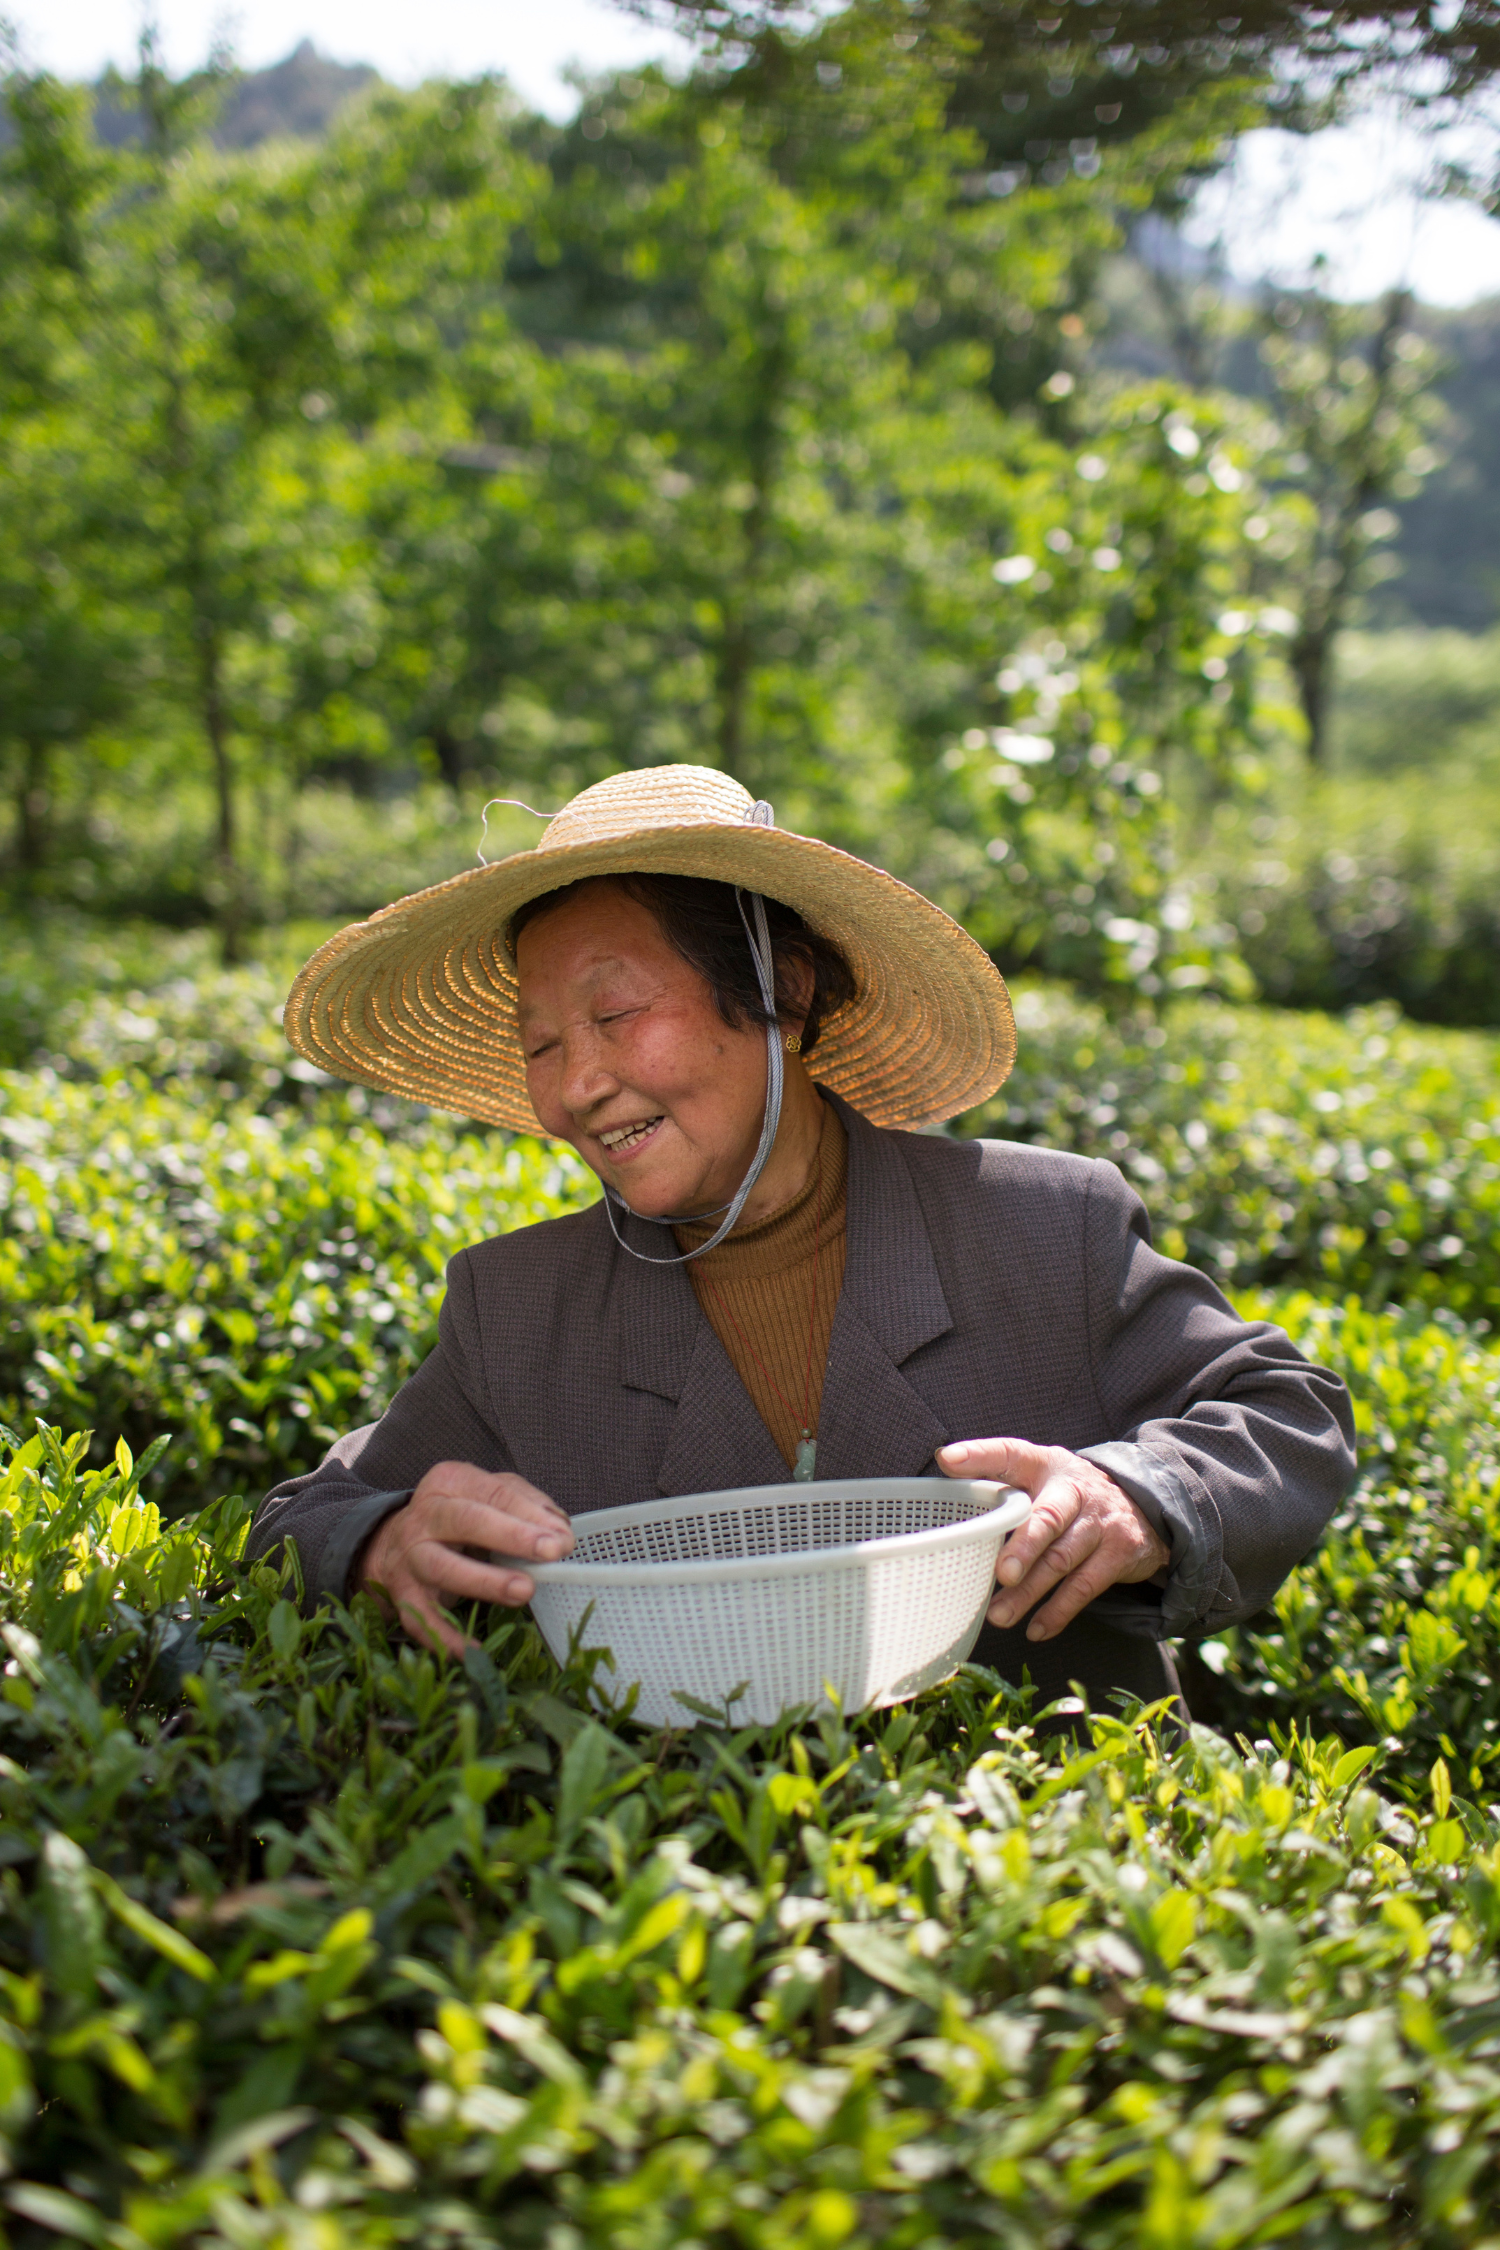 Jiangxi Wuyuan Xitou Tea Farmers Association